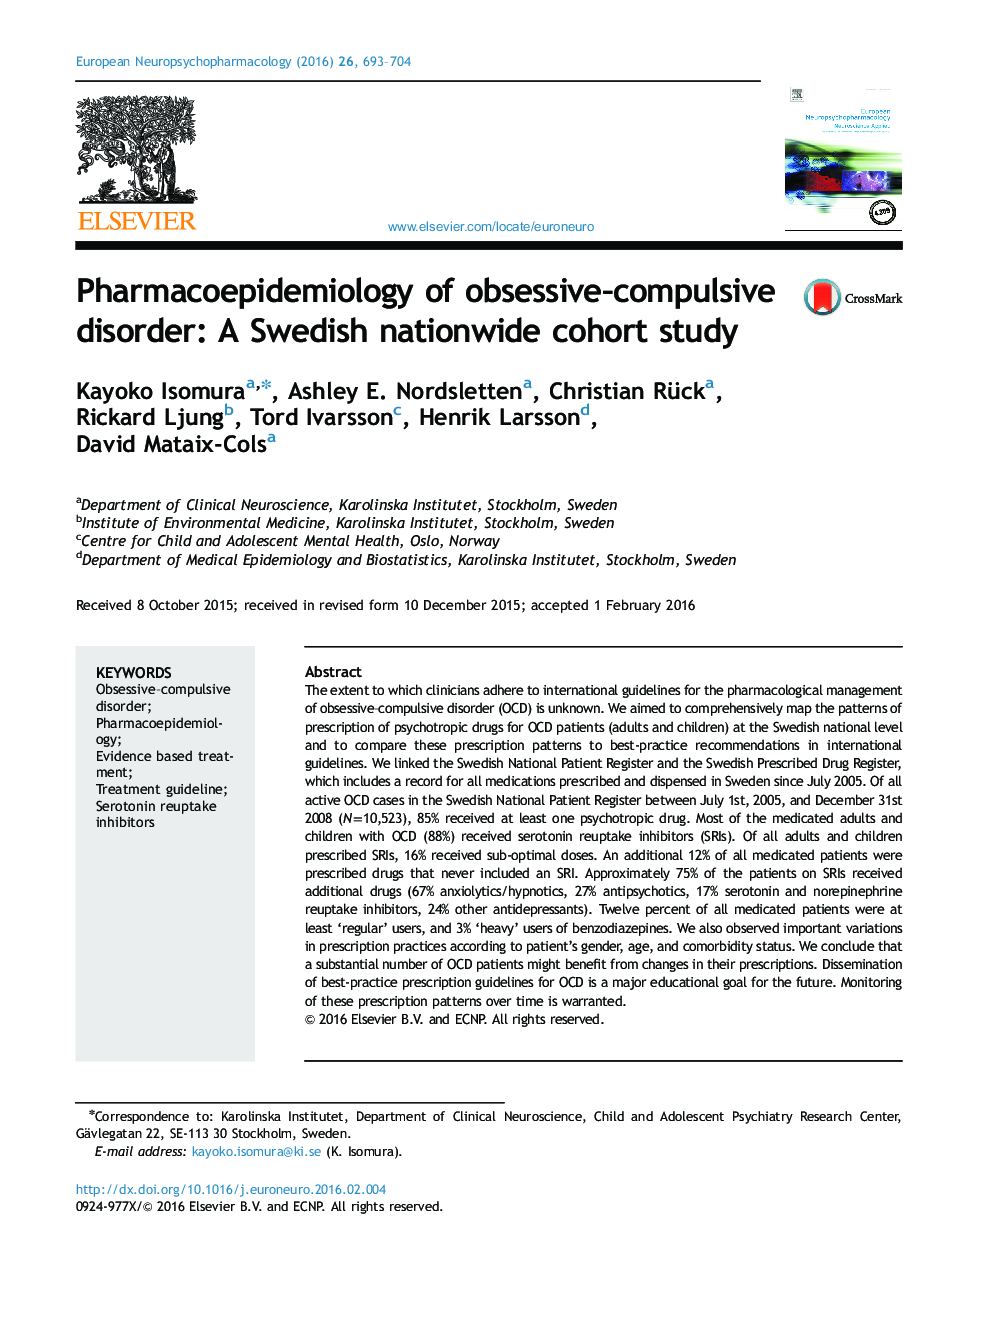 همه‌گیرشناسی دارویی از اختلال وسواس اجباری: مطالعه همگروهی در سراسر کشور سوئد